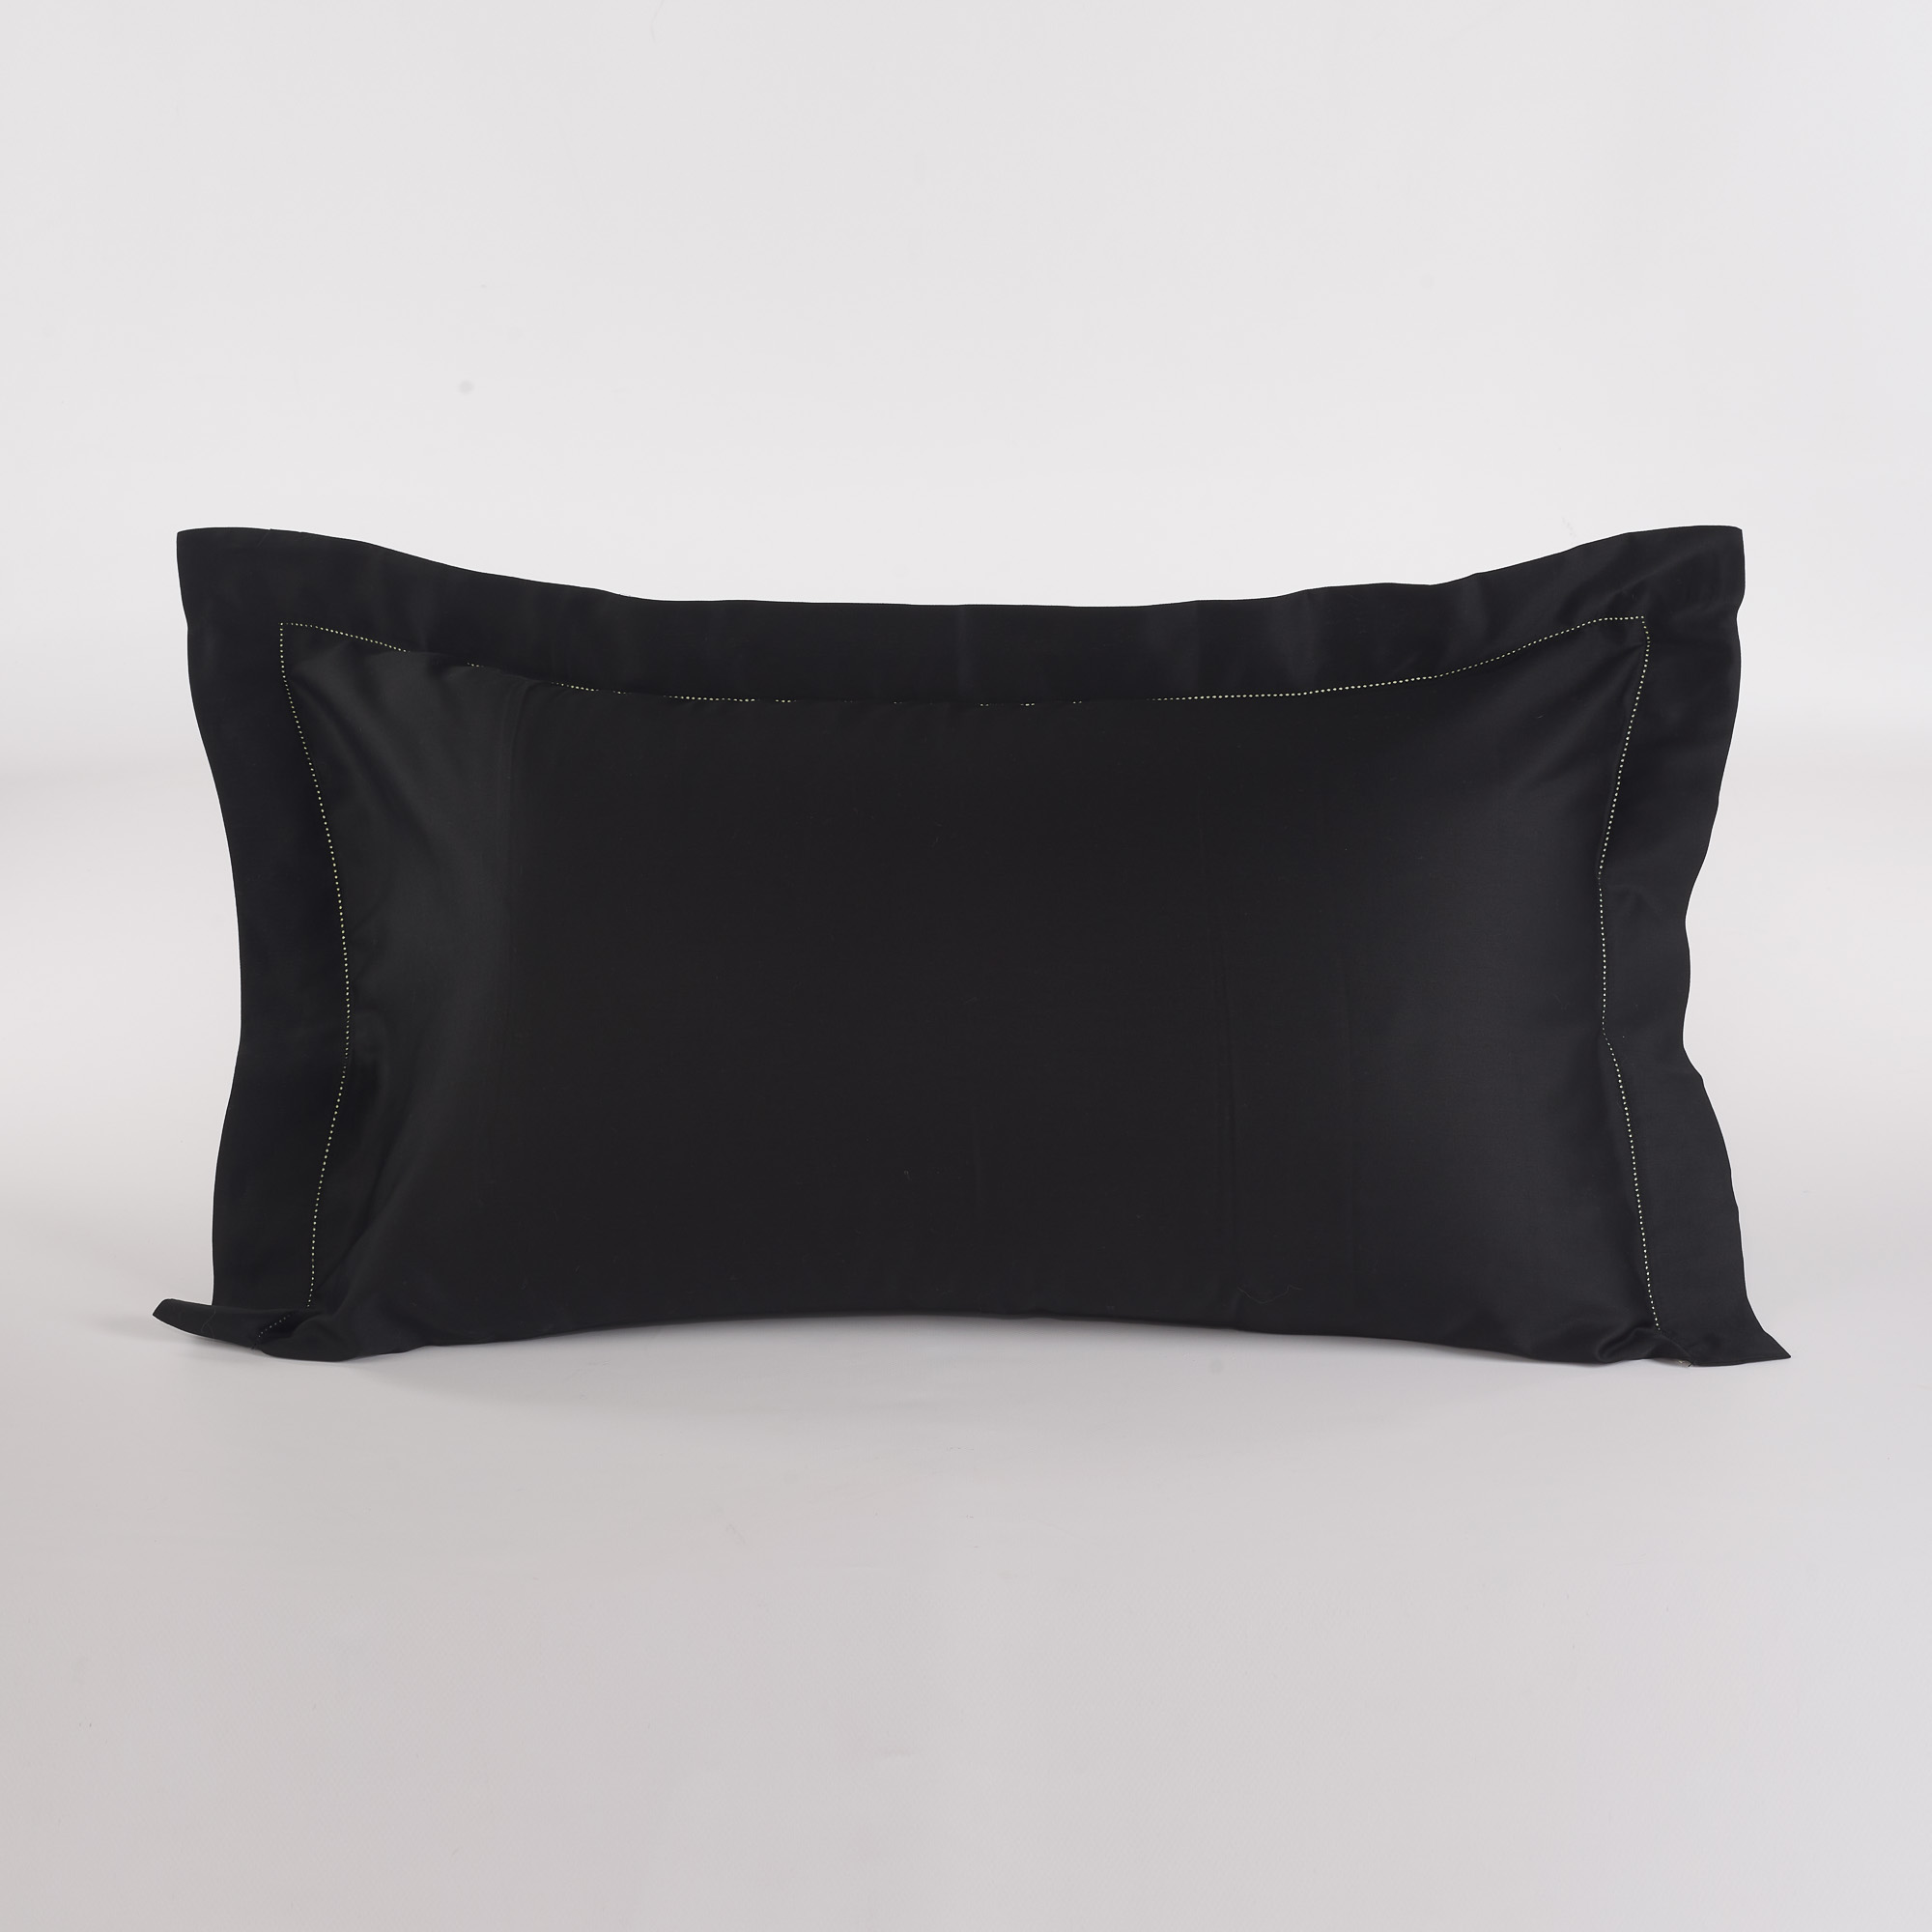 Black Satin Pillowcase With Ajoure Chantal nero Via Roma 60